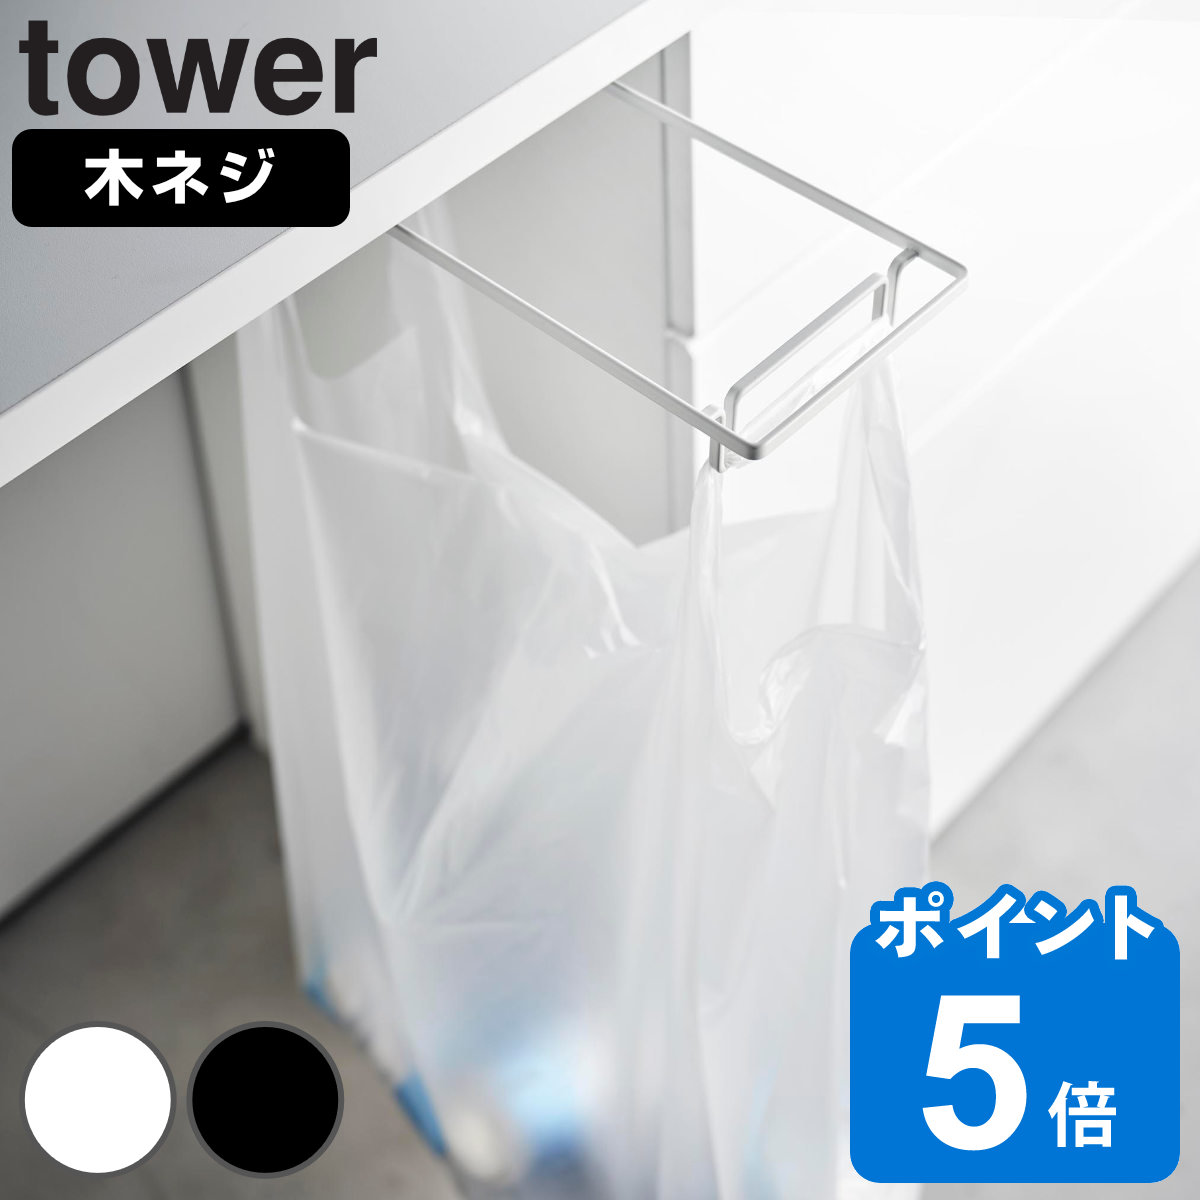 山崎実業 tower テーブル下レジ袋ハンガー タワー